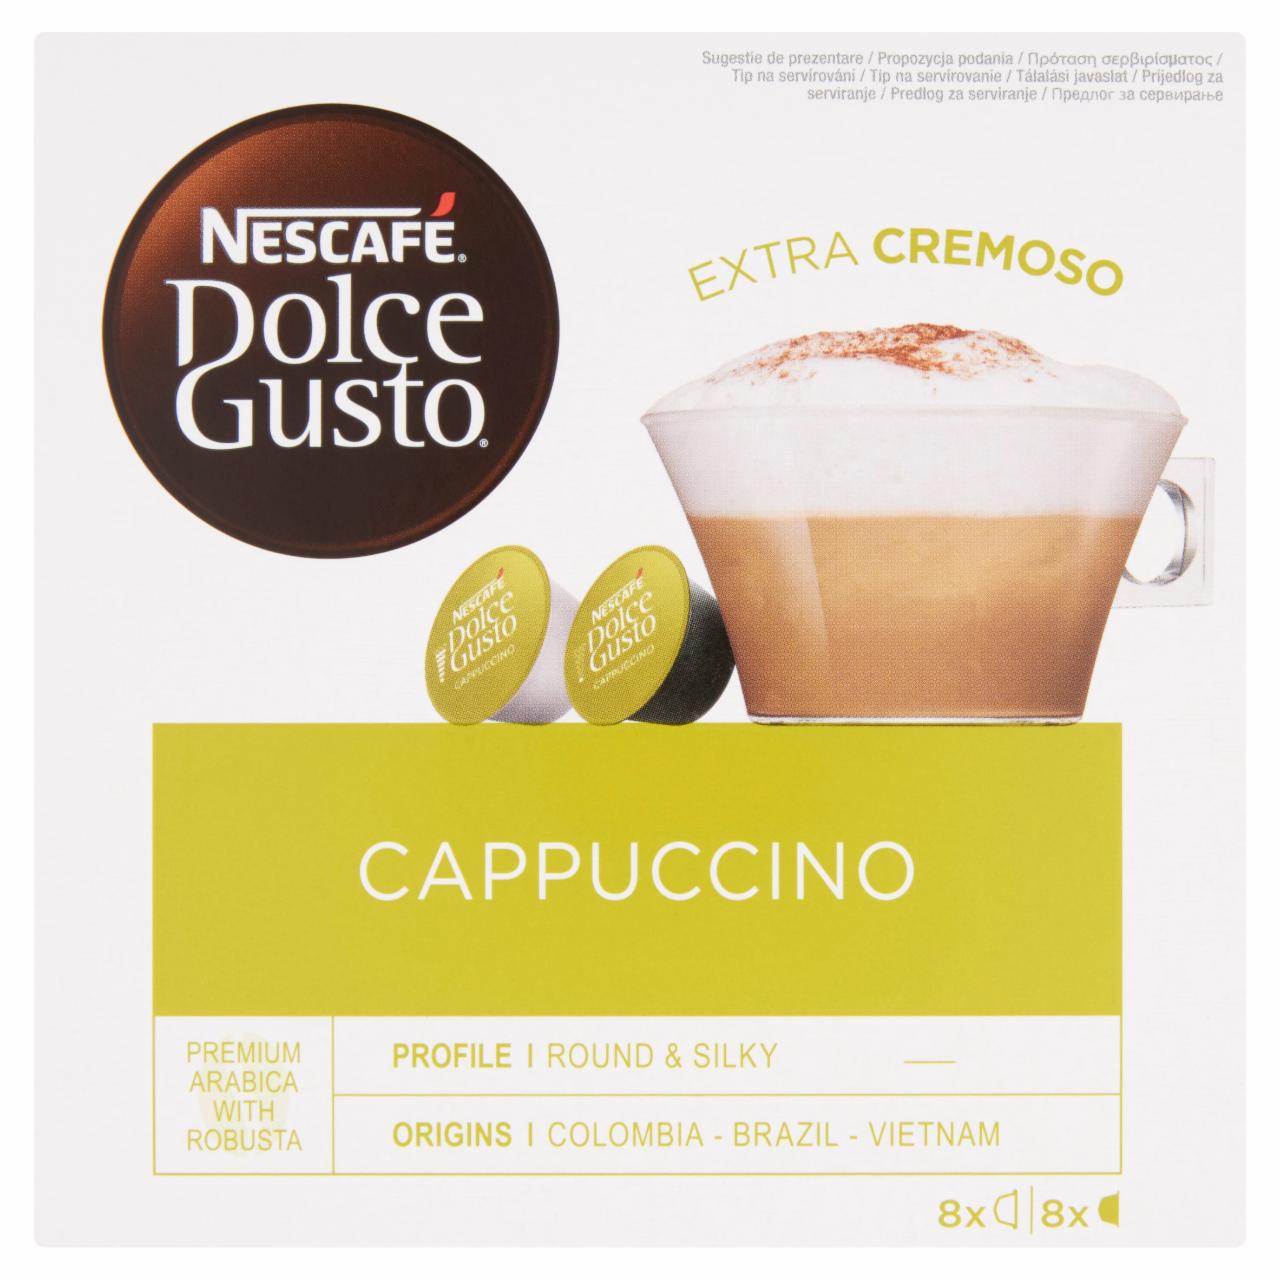 Képek - NESCAFÉ Dolce Gusto Cappuccino tej- és kávékapszula cukorral 16 db 186,4 g